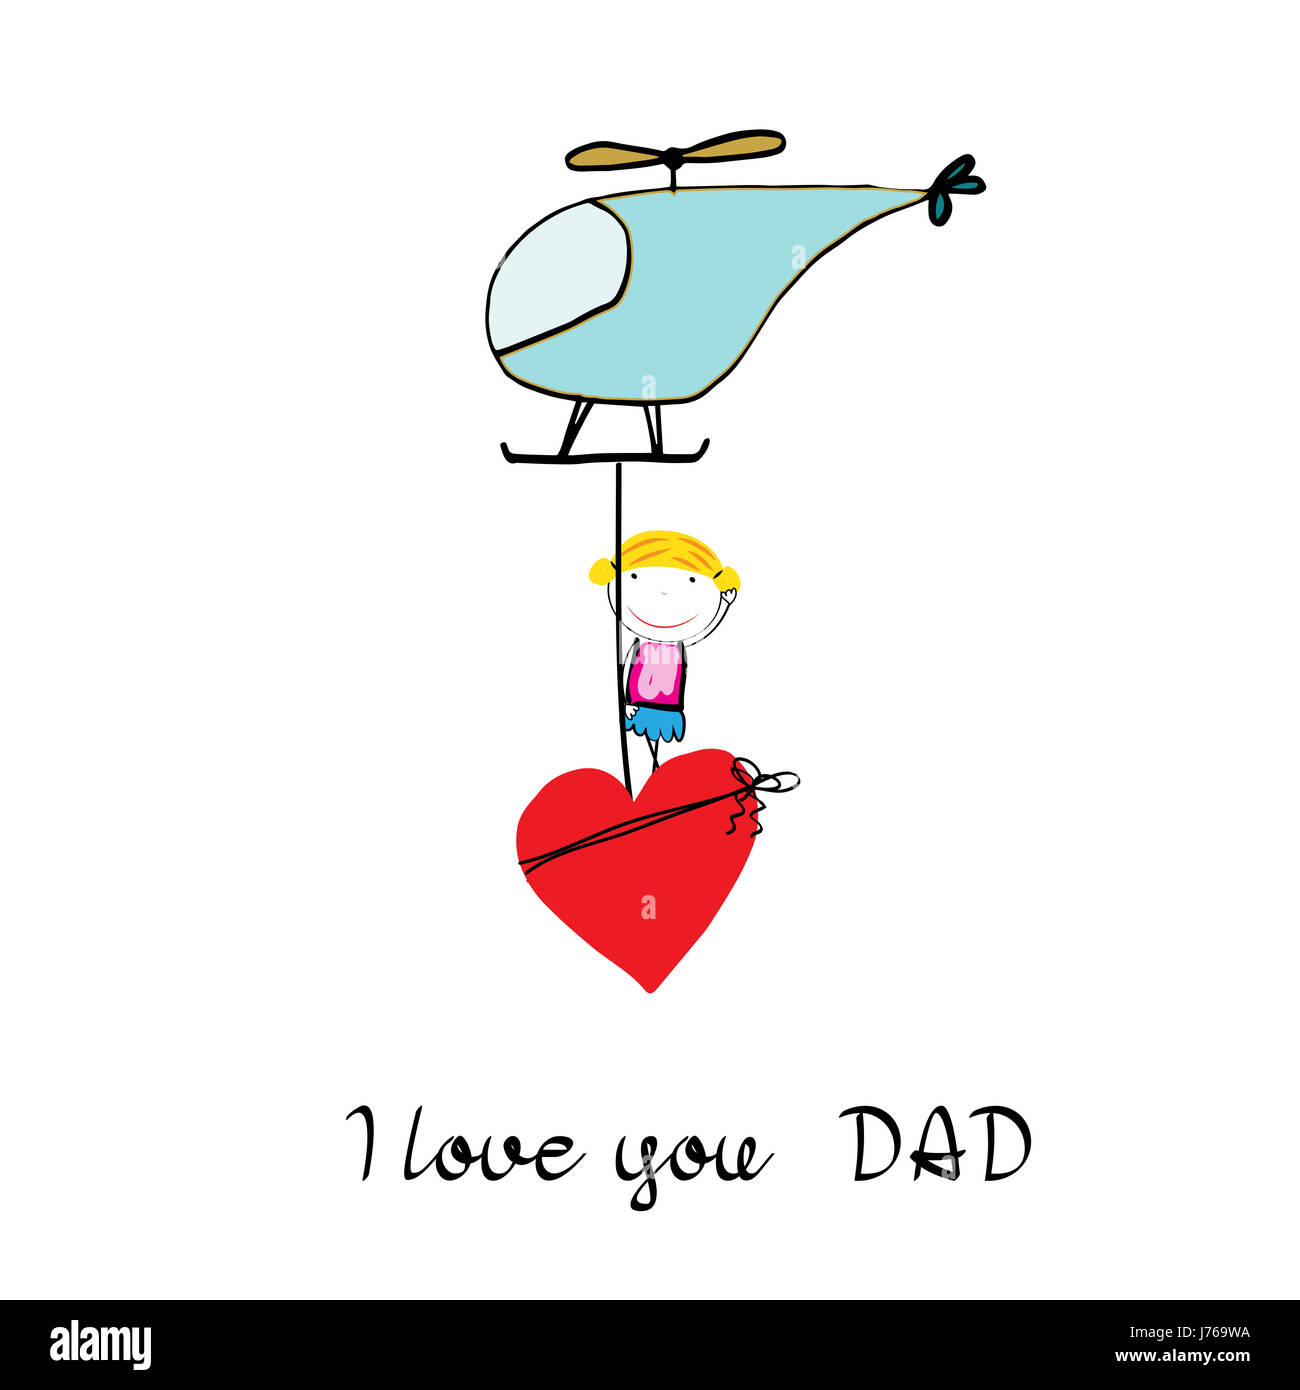 Colorido y dulce tarjeta para el Día del Padre. Dibujo infantil Foto de stock